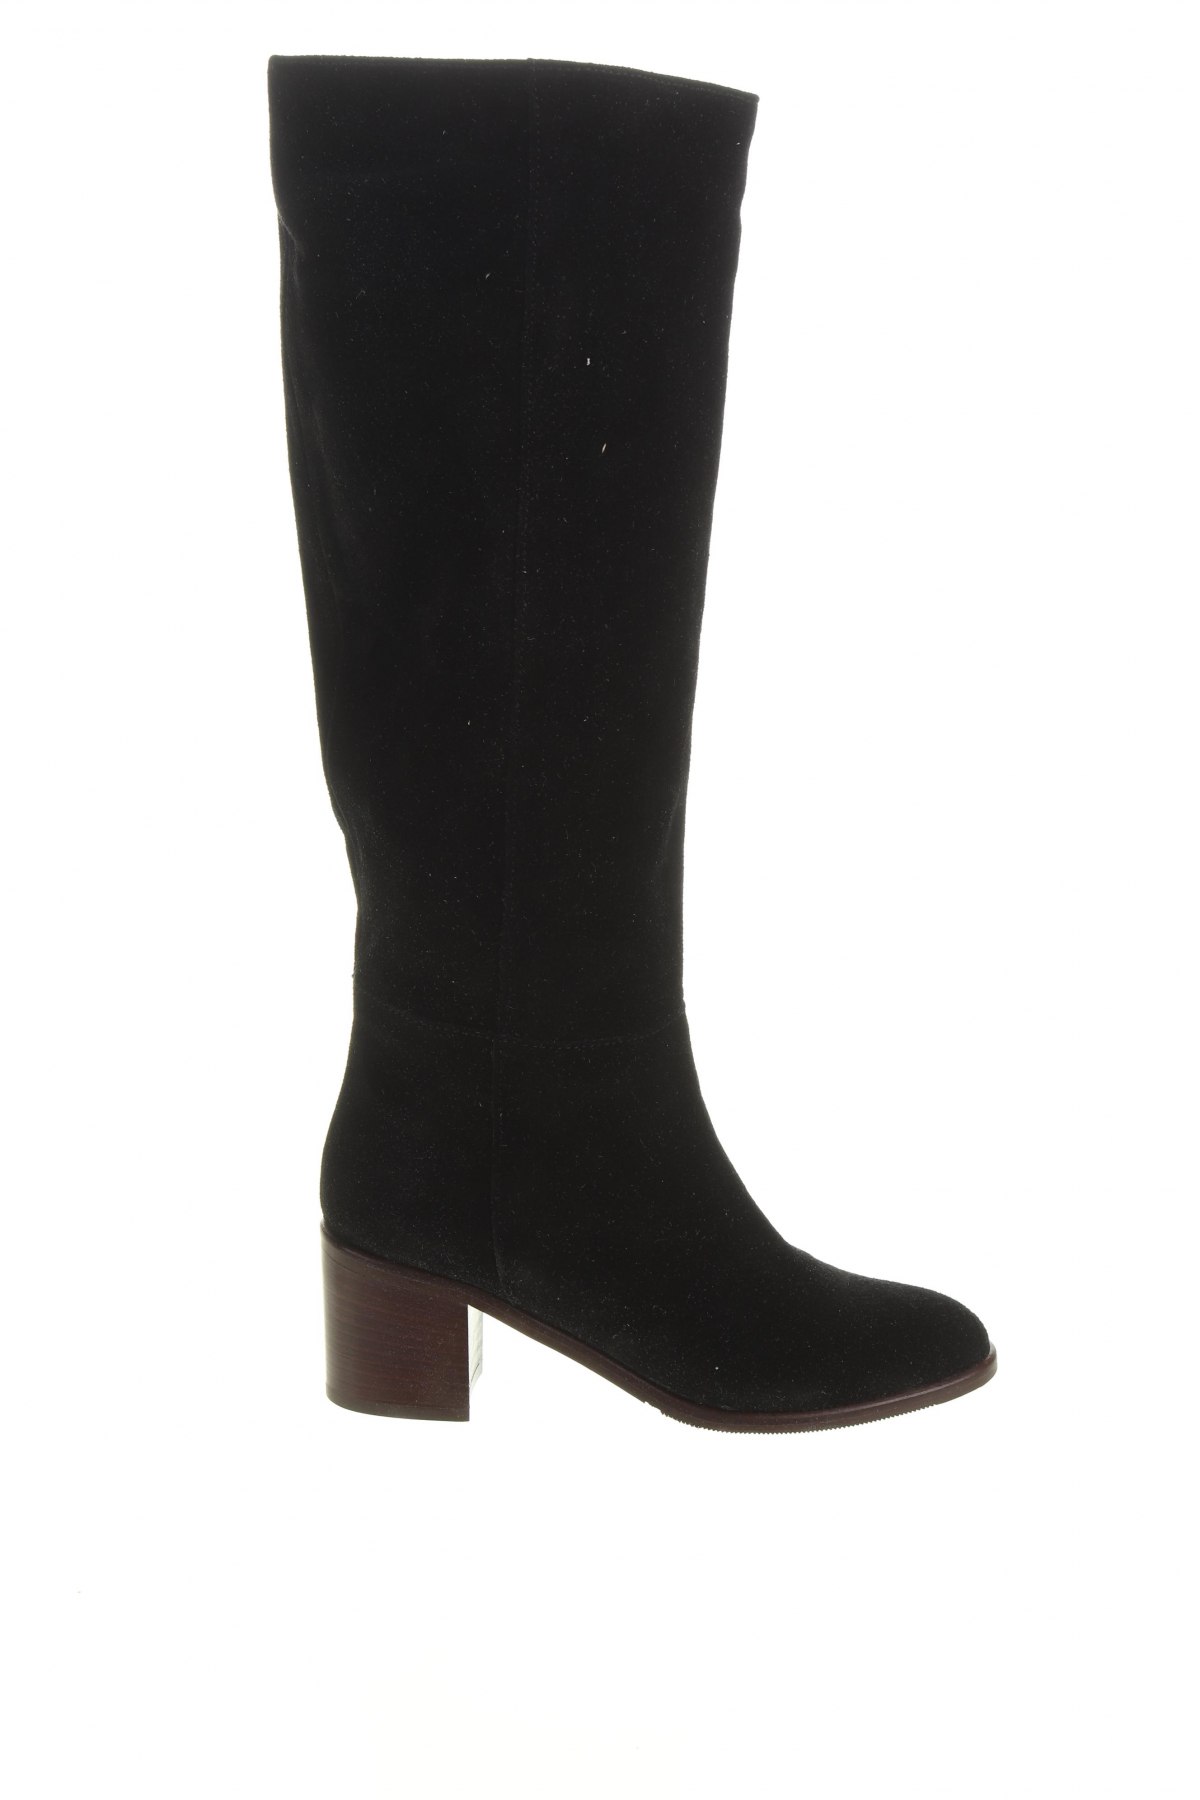 Γυναικείες μπότες Minelli, Μέγεθος 35, Χρώμα Μαύρο, Φυσικό σουέτ, Τιμή 190,21 €